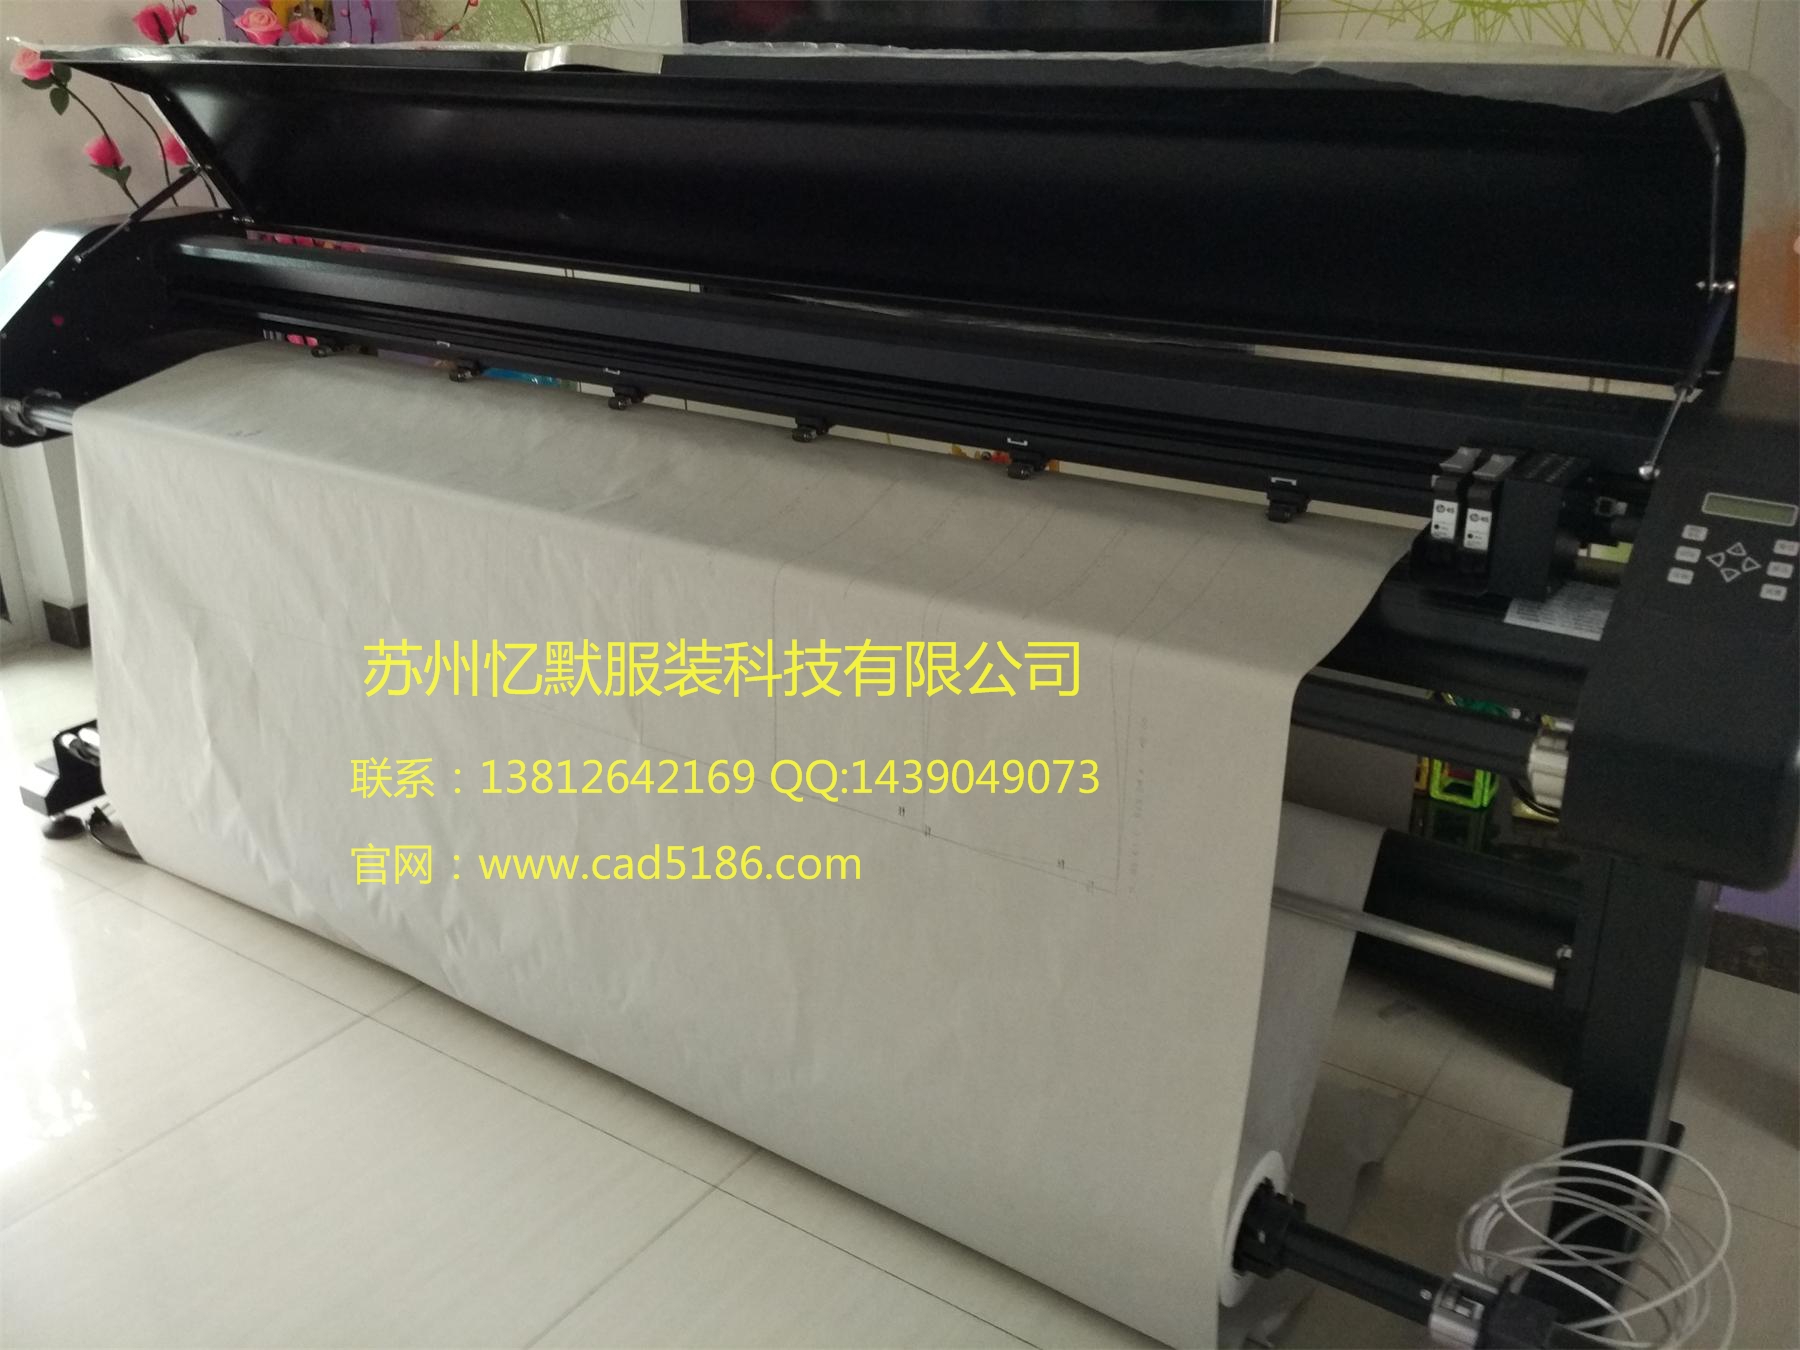 服装切绘一体机平板切割机CAD绘图仪销售上海苏州泰州无锡南通常州